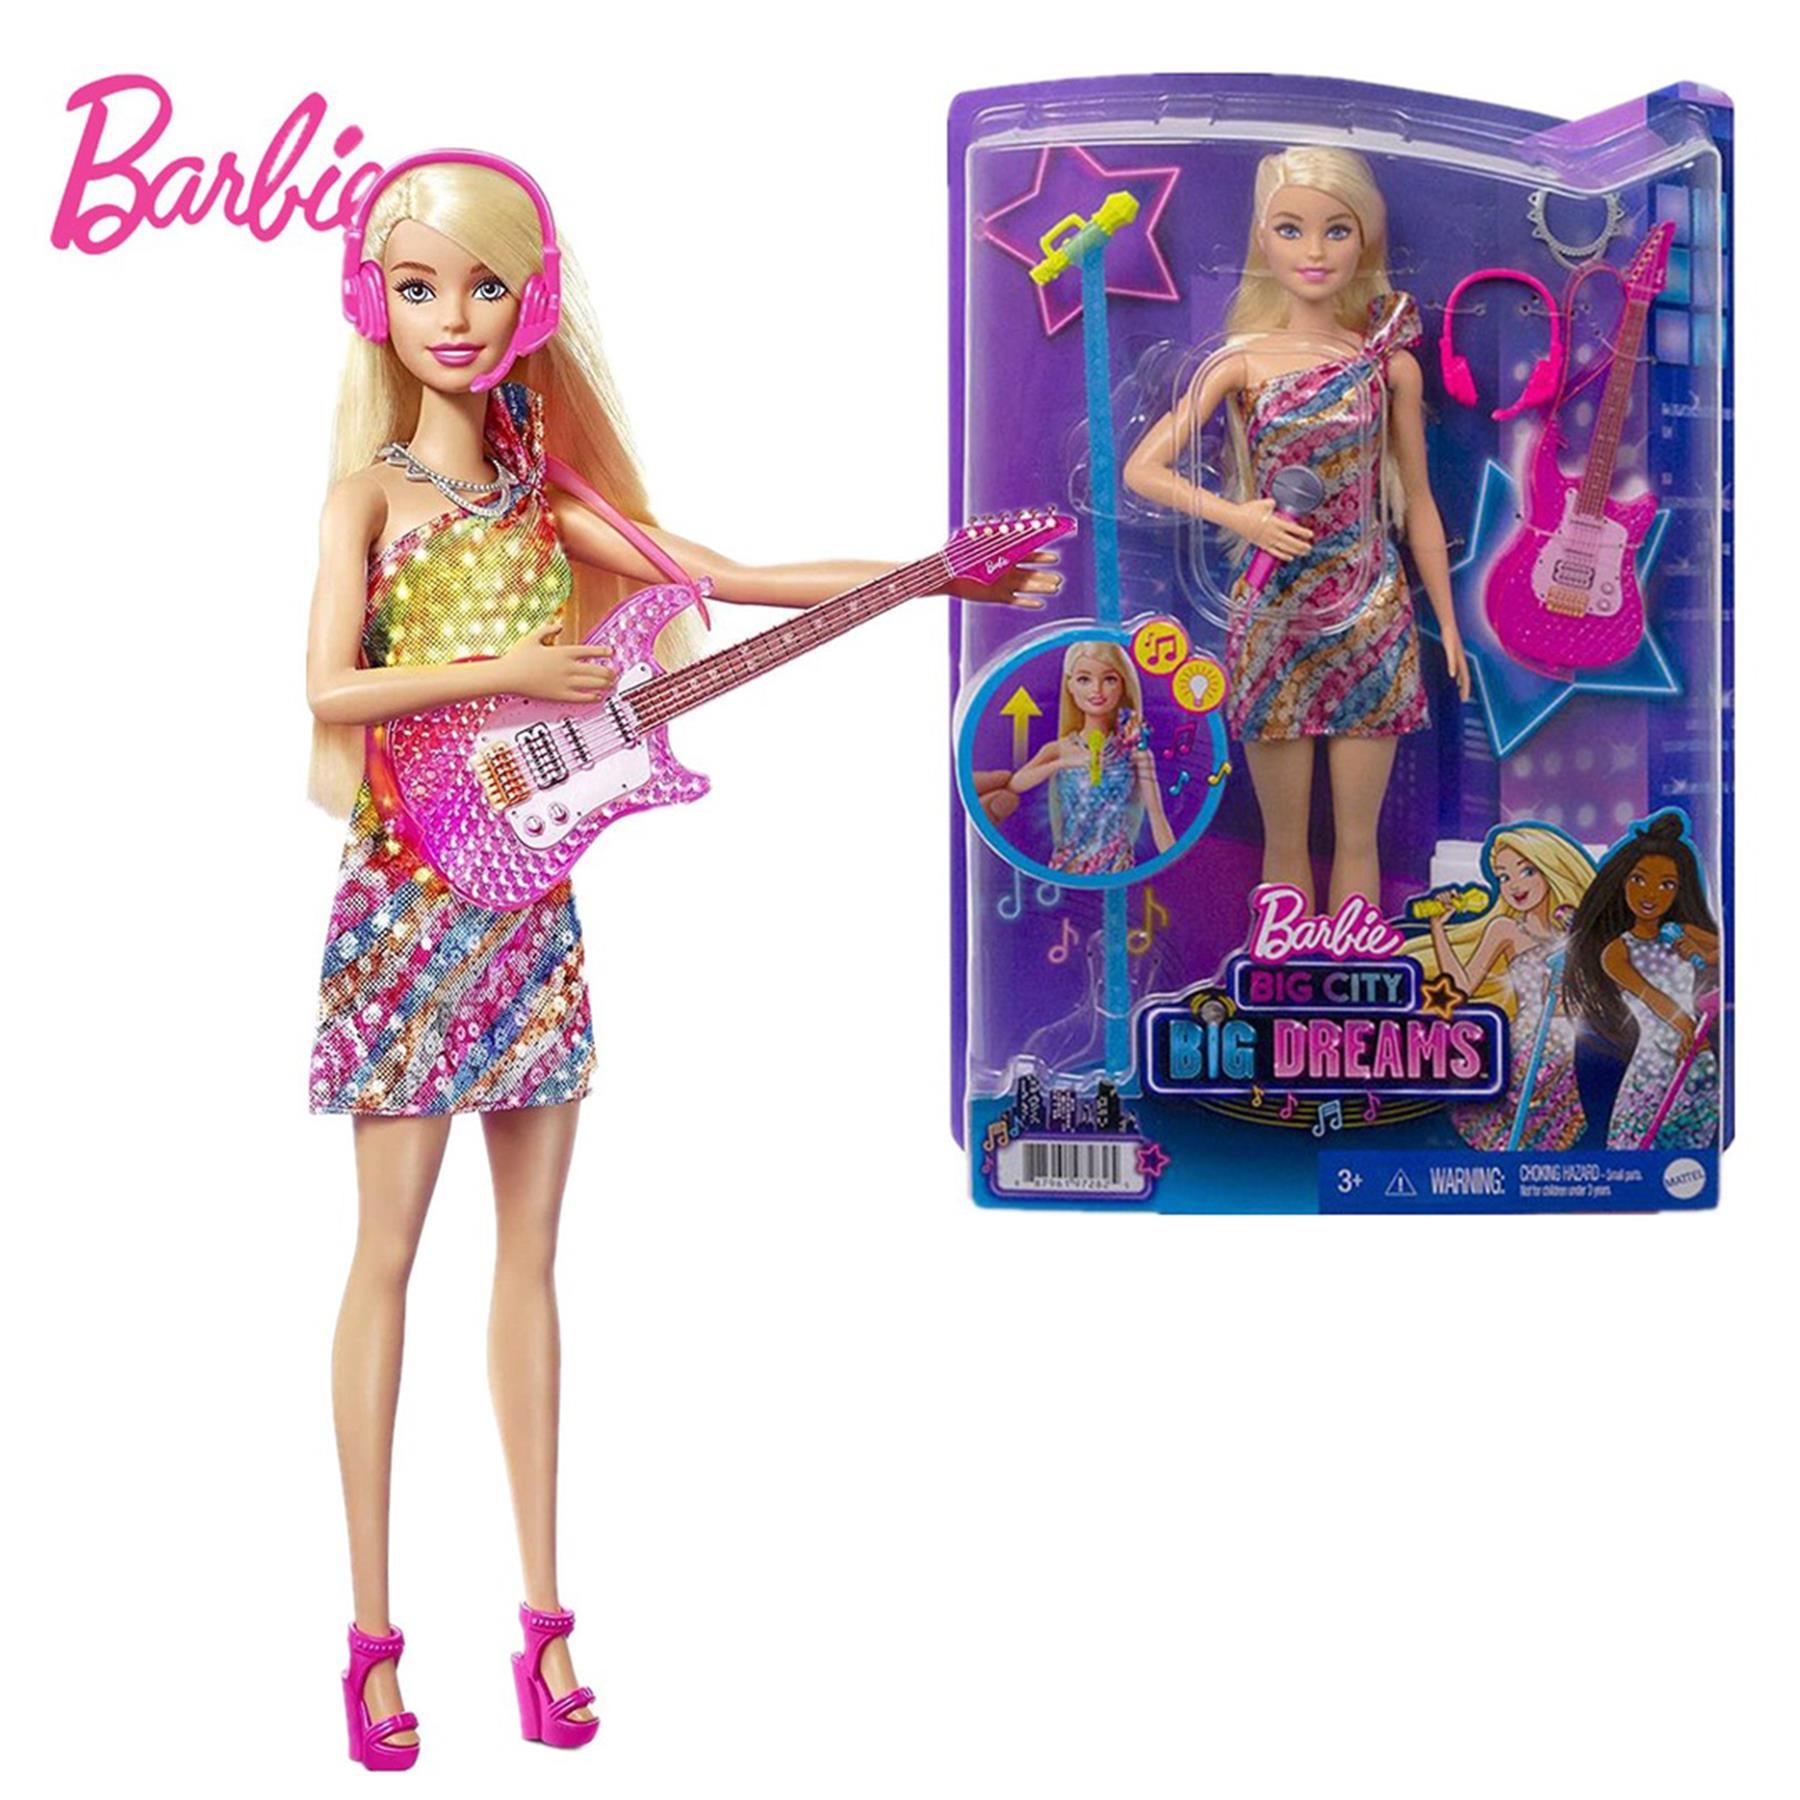 Barbie Big City Big Dreams Malibu Doll Playse by Barbie - The Magic Toy Shop